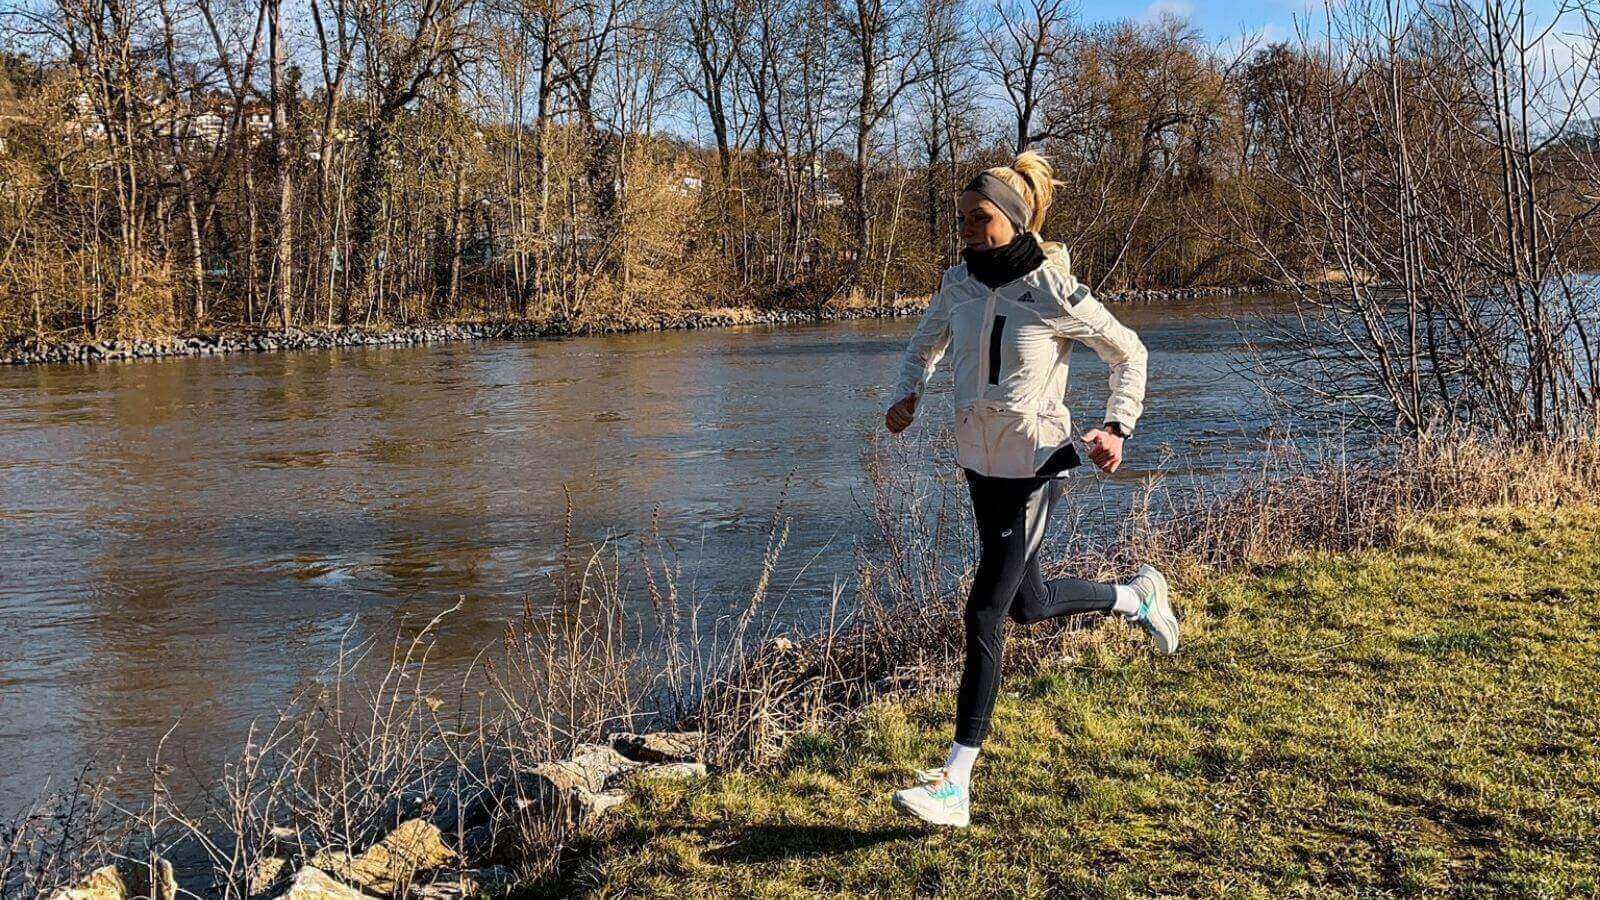 Lauras Keto Erfahrung: Fit und gesund beim Laufen